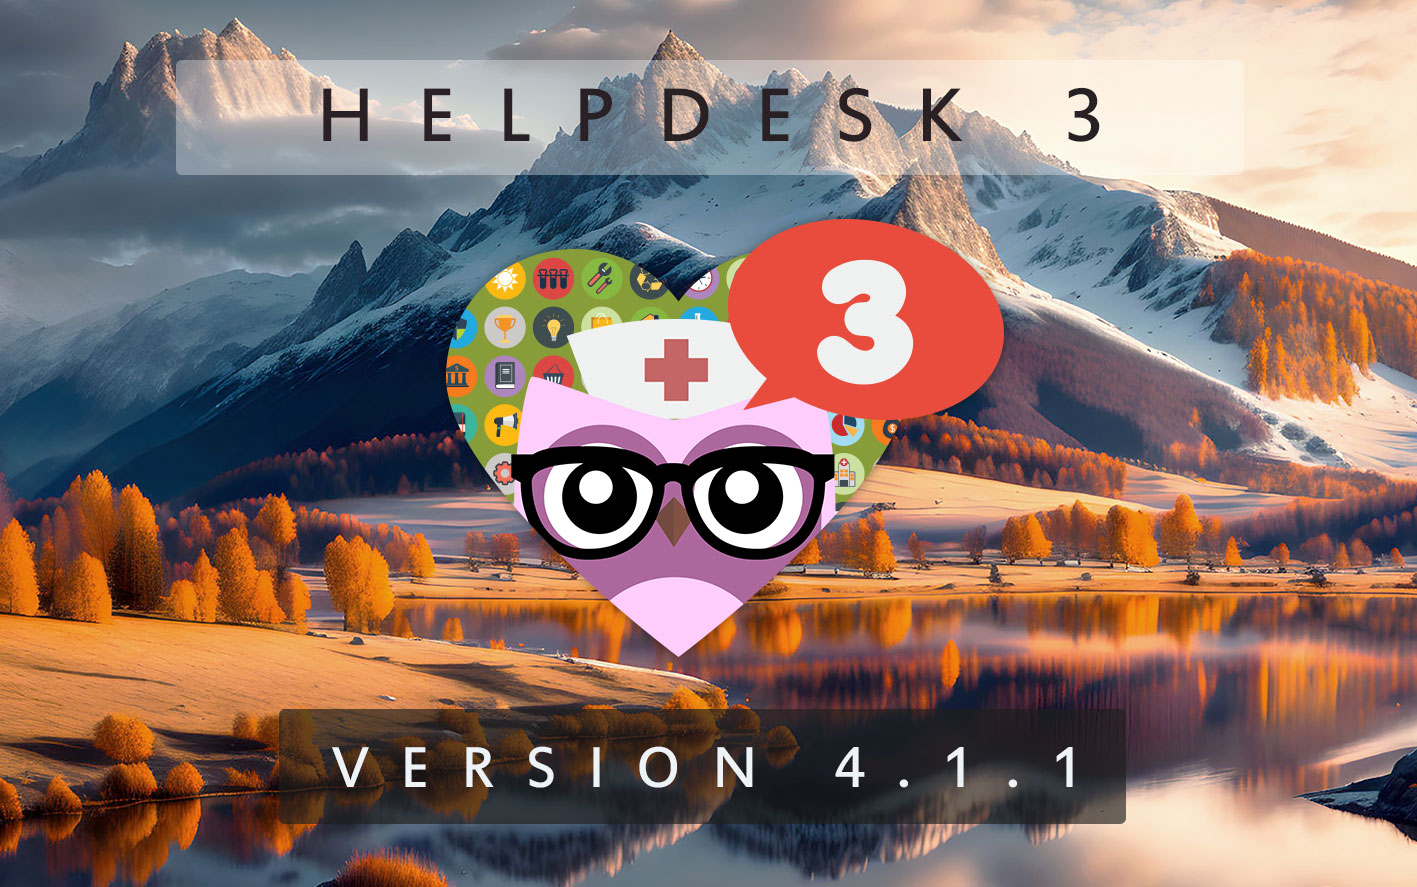 HelpDesk 3 - Version 4.1.1